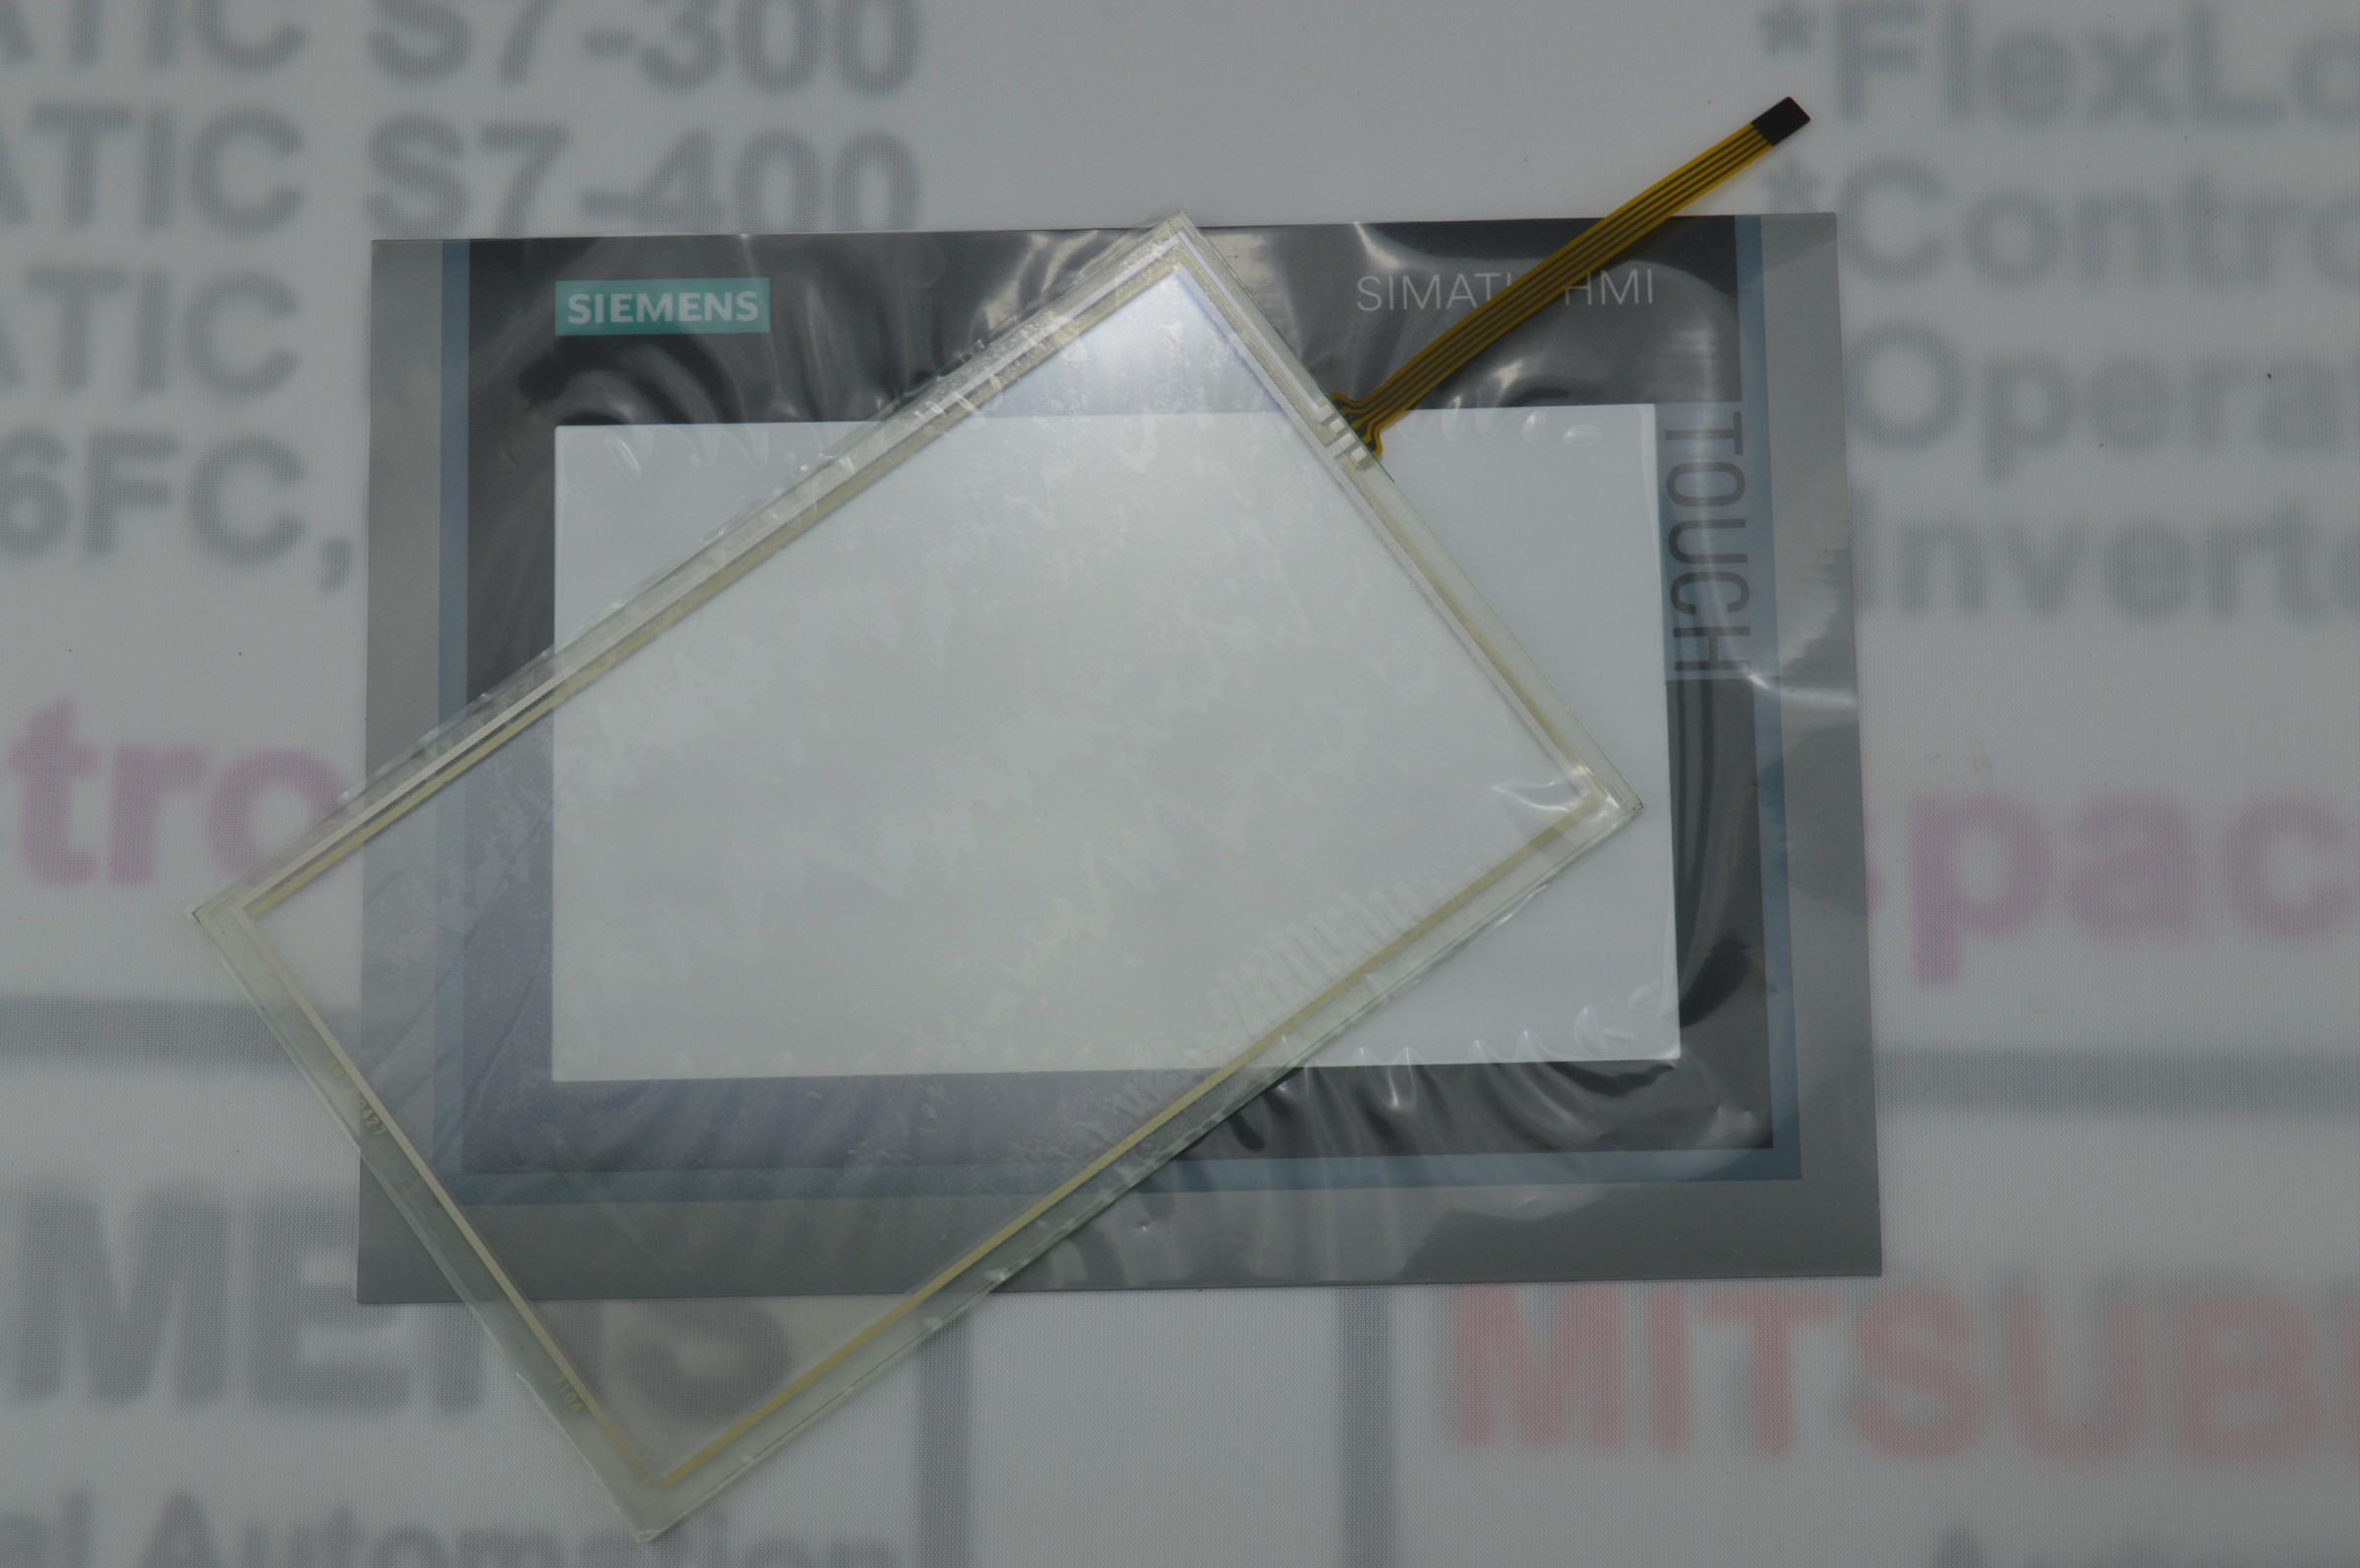 6 av 2124-0 gc 01-0 axe 0 tp700 membranfilm + berøringsglas til simatic hmi panel reparation ~ gør det selv, har på lager